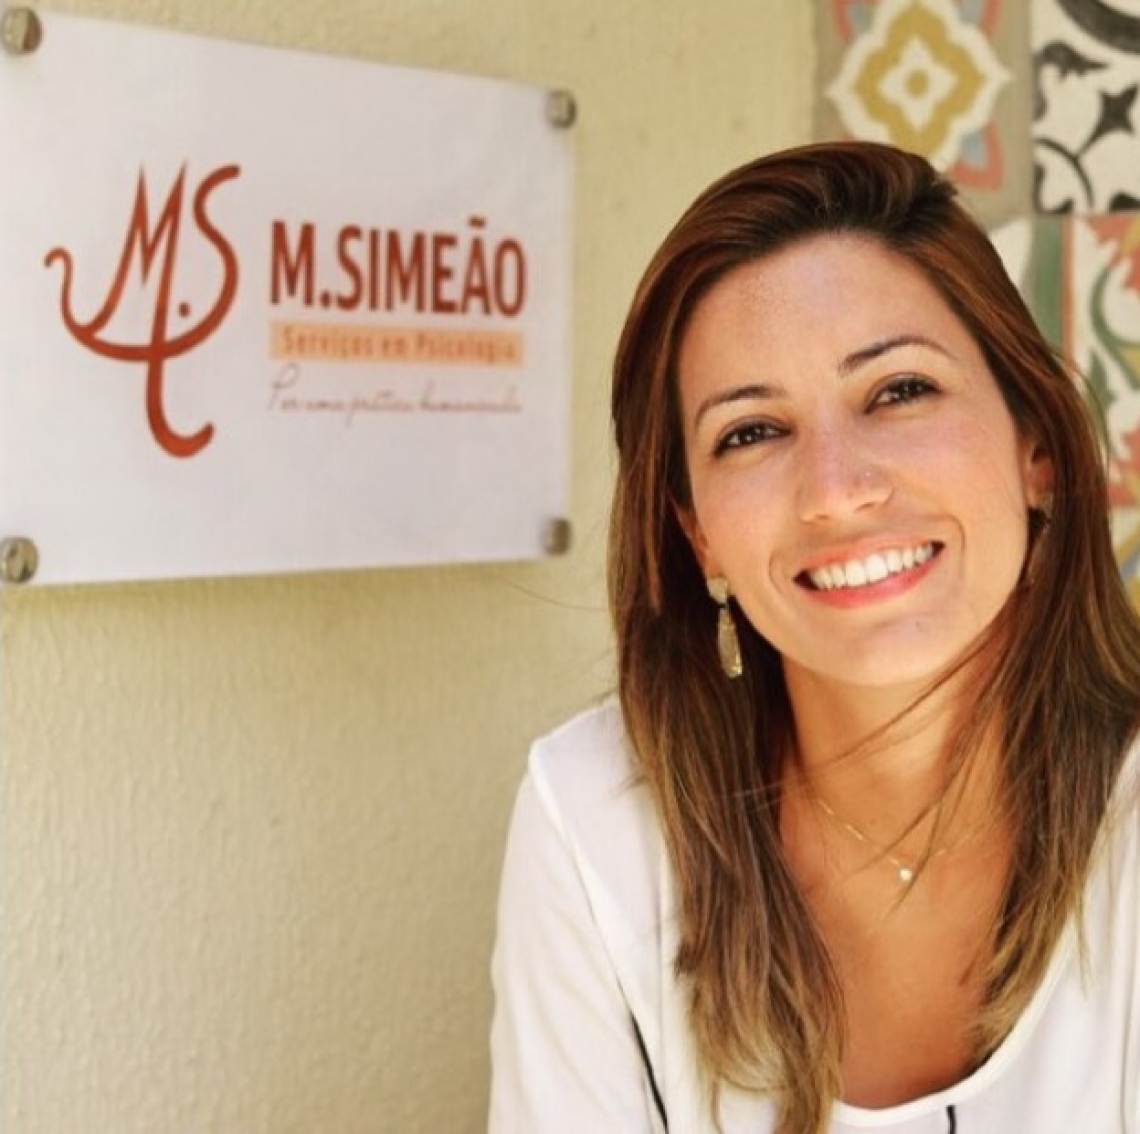 Psicologa Marina Simeão ensina como lidar com frustrações que novos ciclos podem causar (Foto: Divulgação)